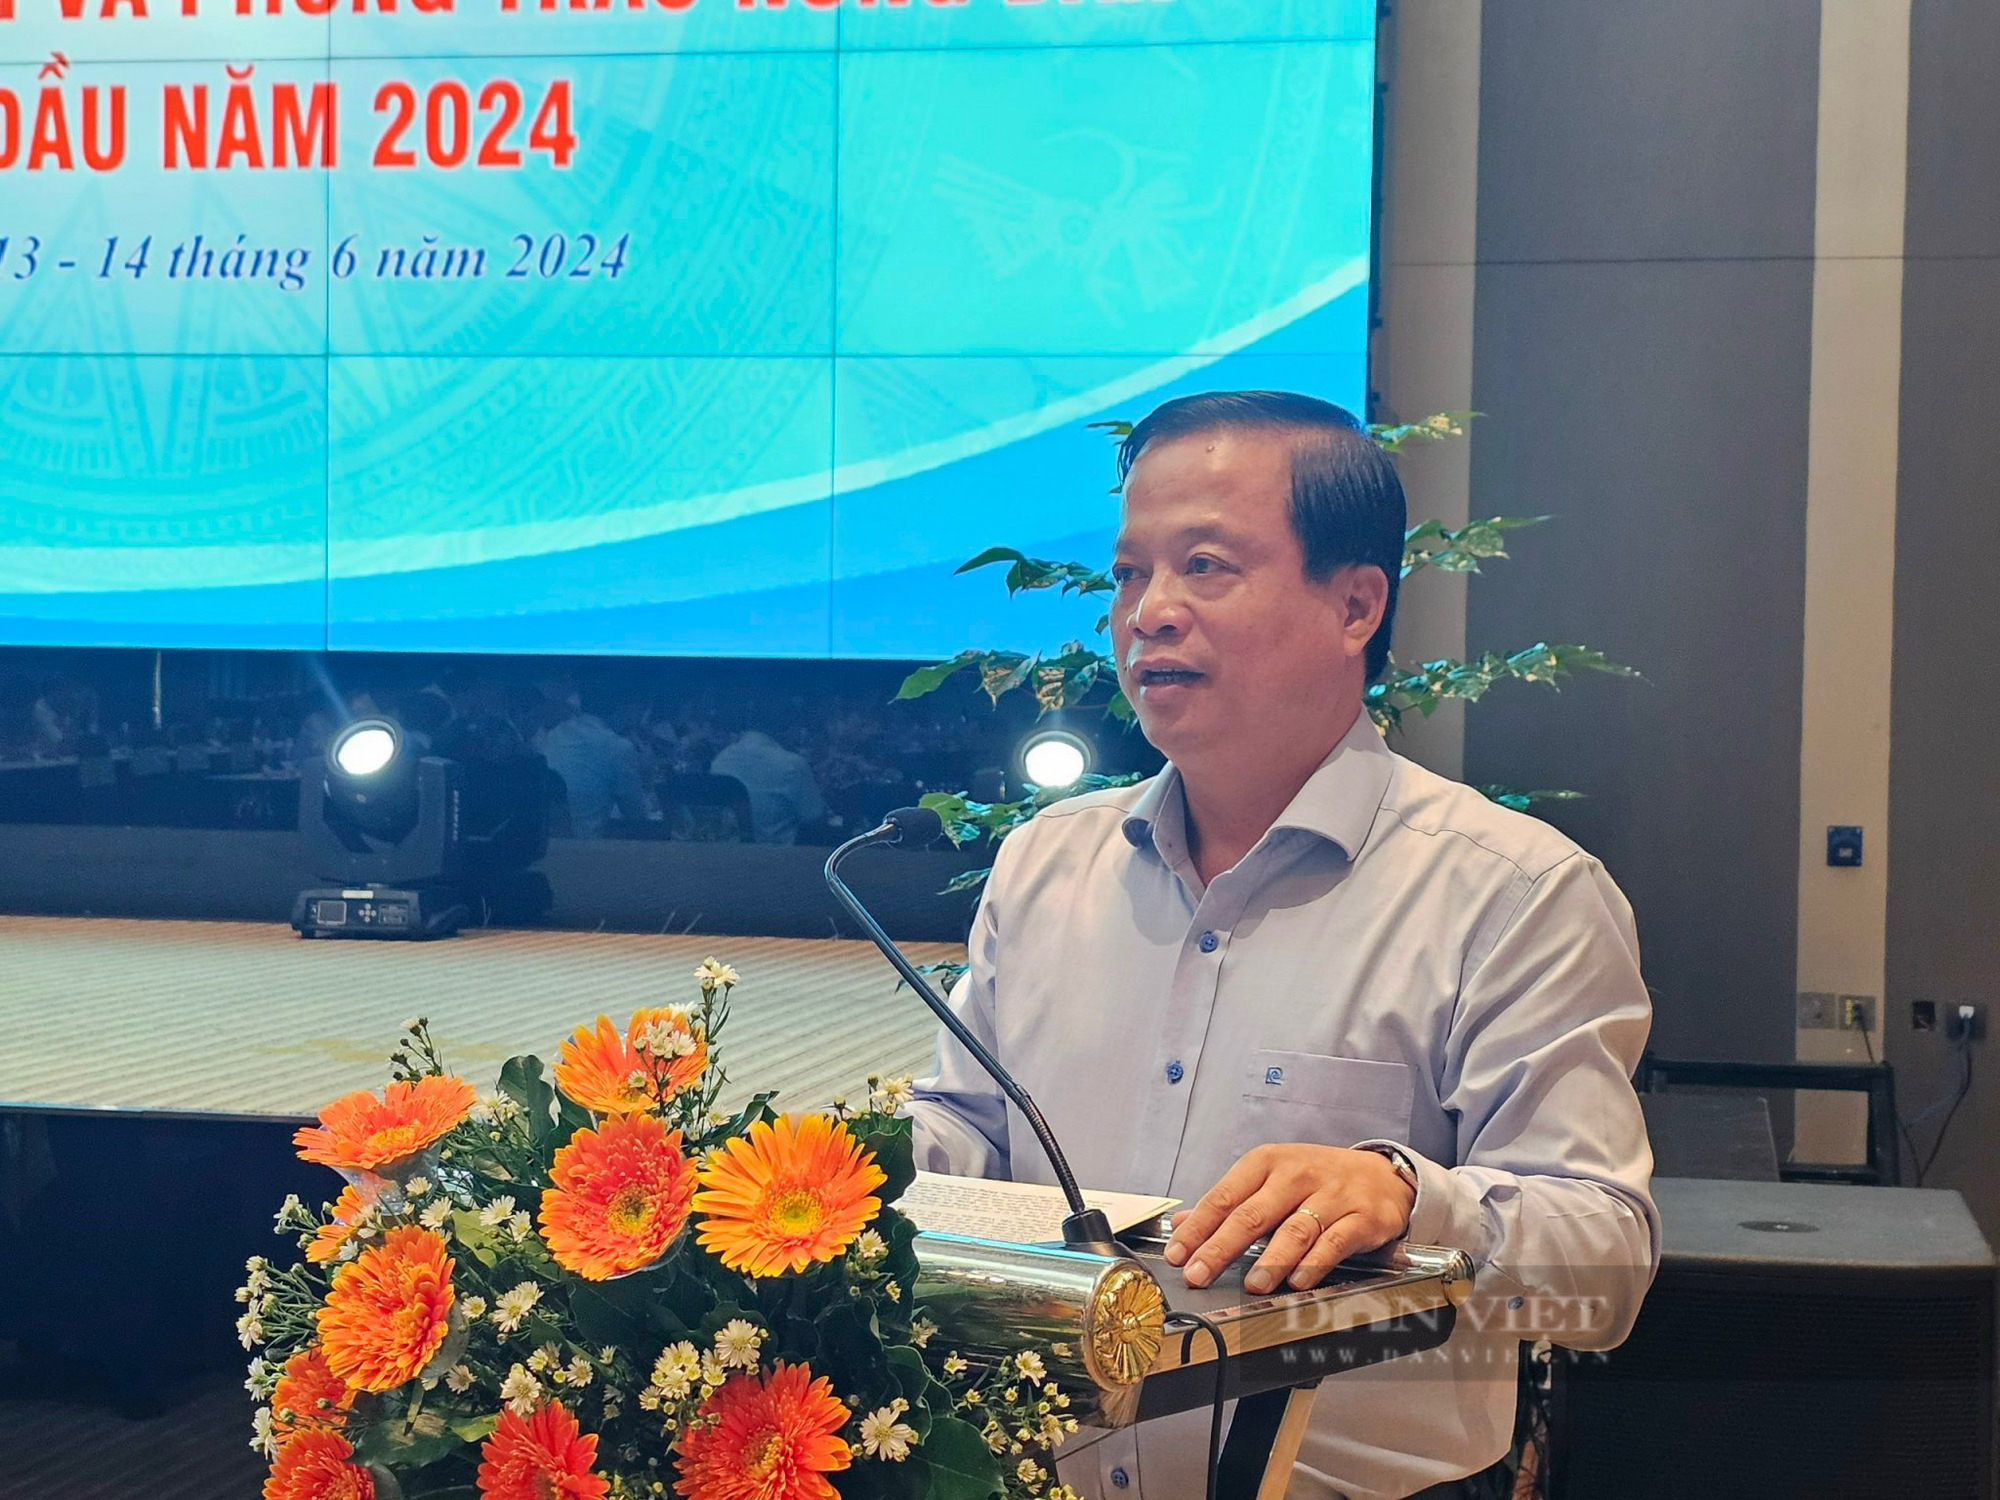 Phó Chủ tịch Hội NDVN Đinh Khắc Đính chủ trì hội nghị giao ban Cụm thi đua số 3 tổ chức tại Bình Định- Ảnh 2.